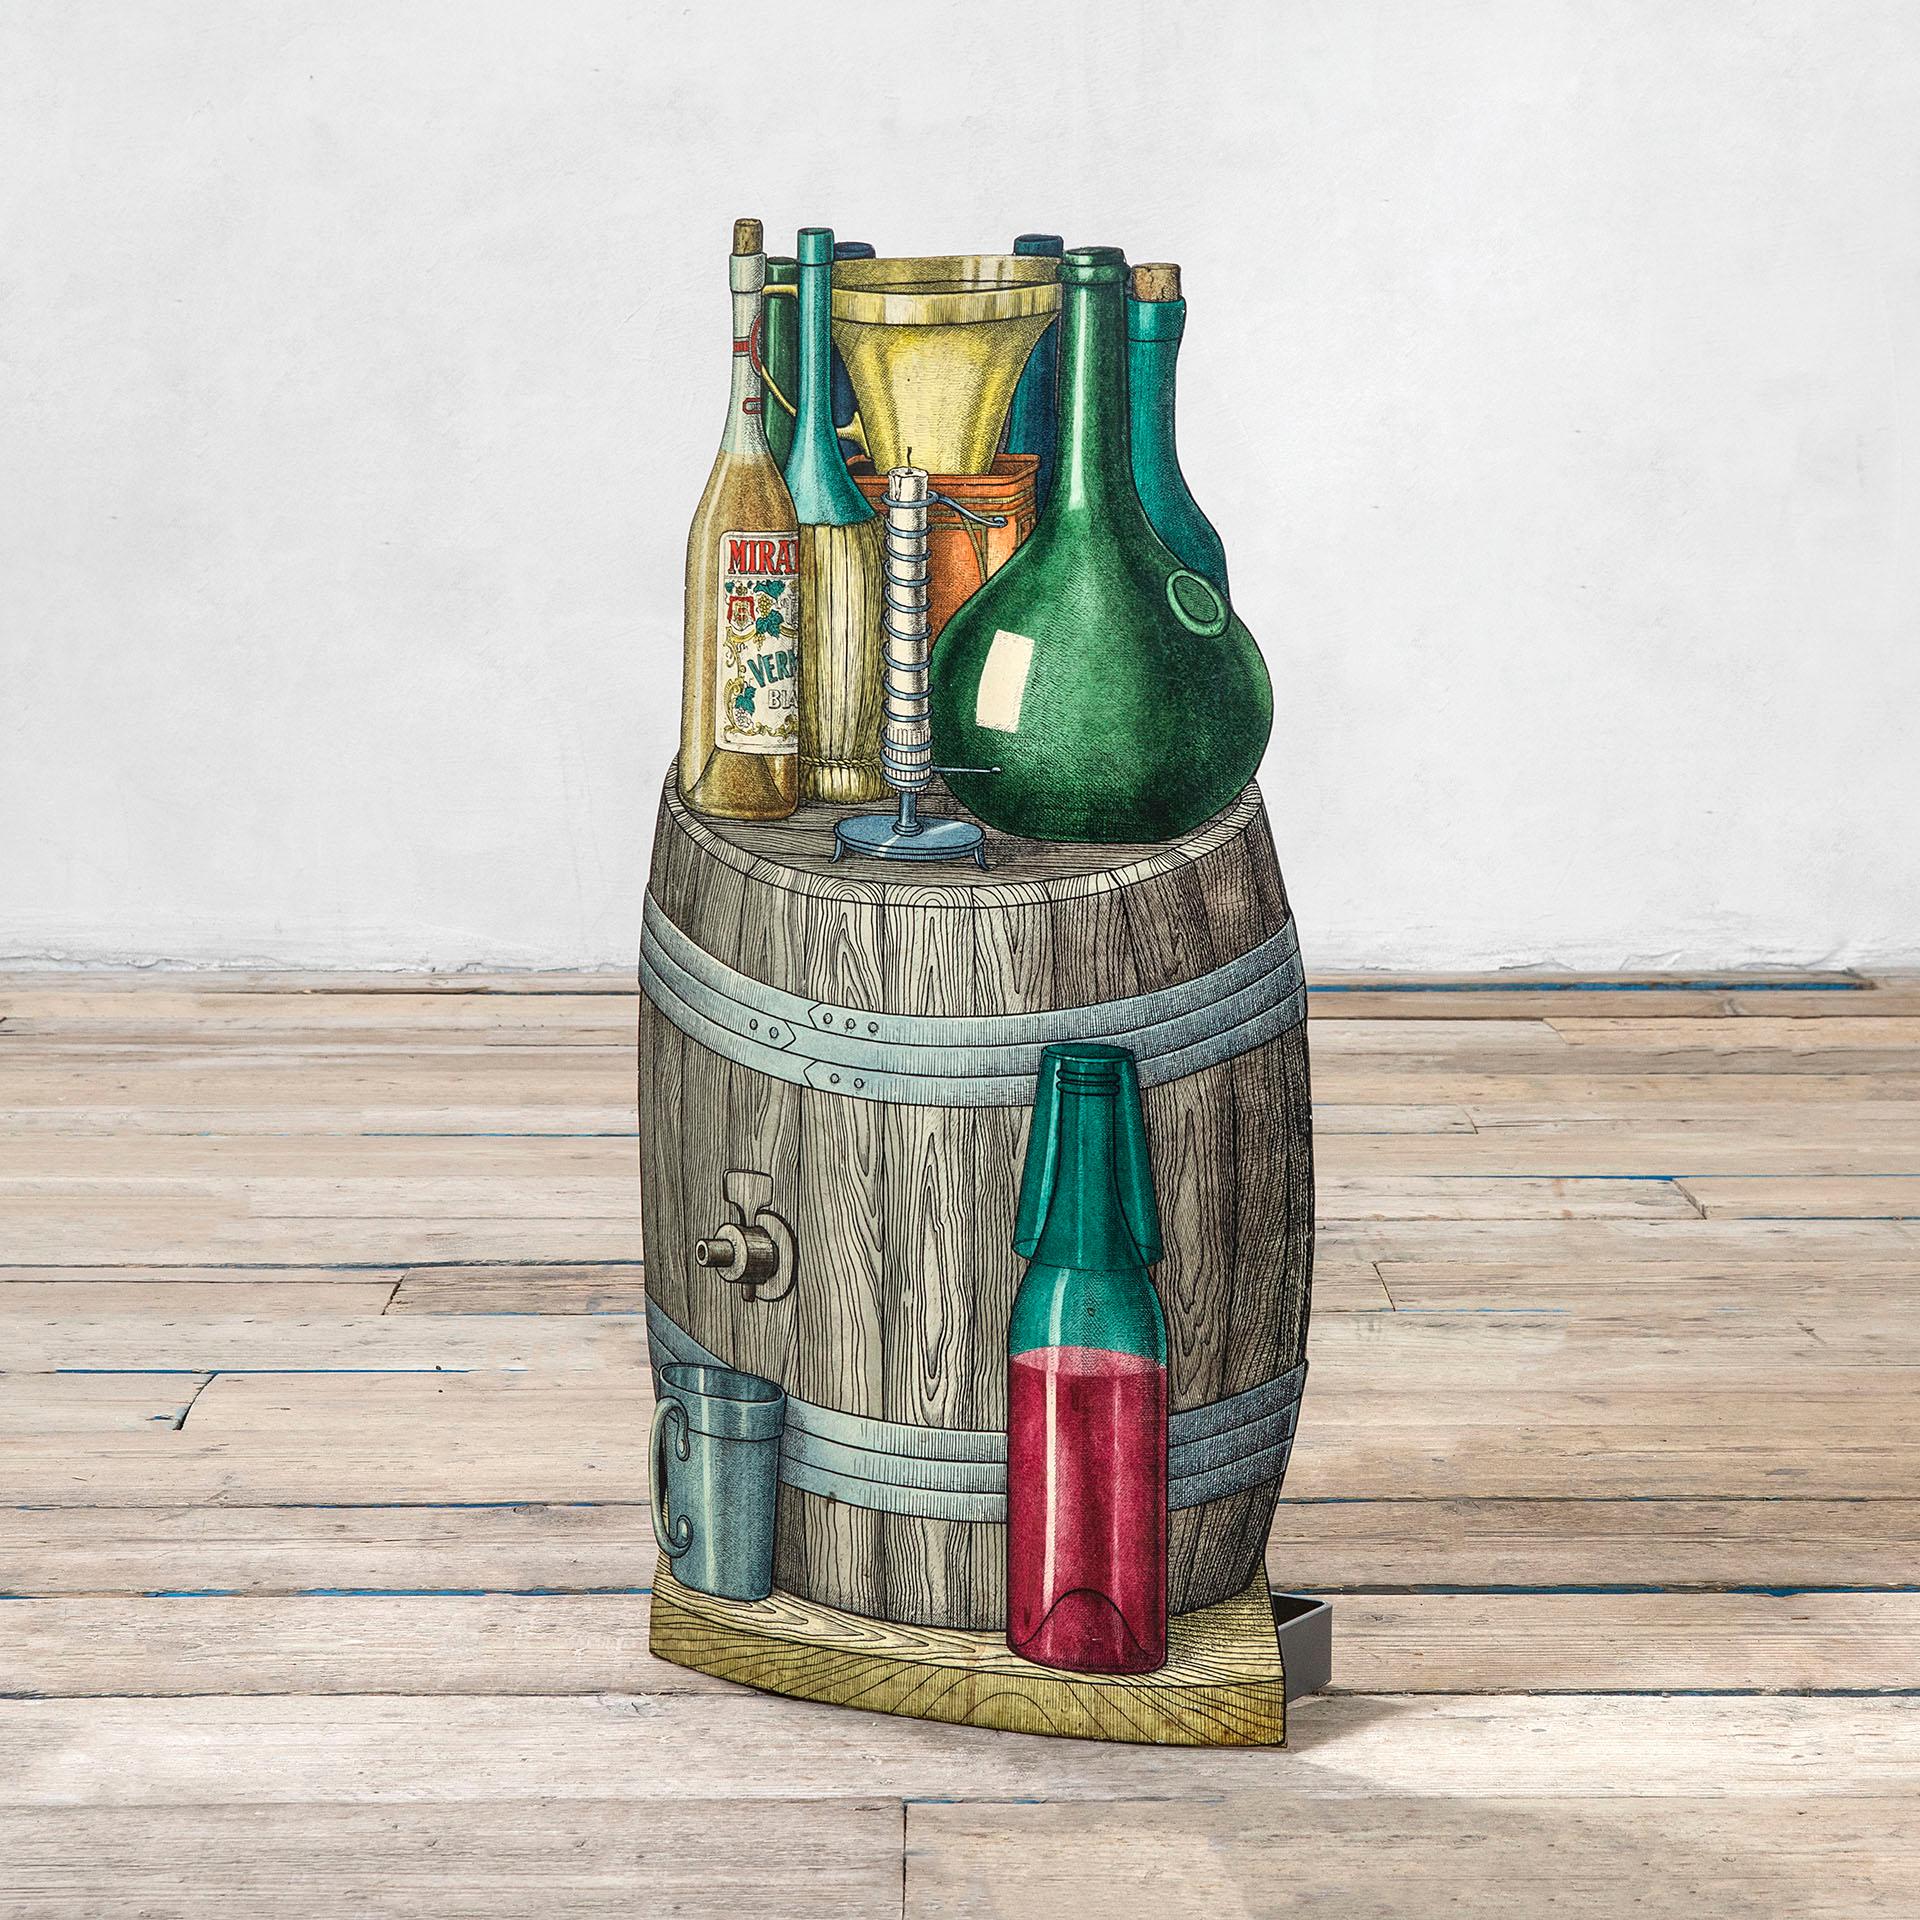 Schirmständer von Piero Fornasetti mit Flaschen auf einem typisch italienischen Weinfass, aus siebgedrucktem Blech aus den 1950er Jahren. Guter Zustand, Patina der Zeit, original in allen seinen Teilen.
Sehr witziger Gegenstand, der in einem